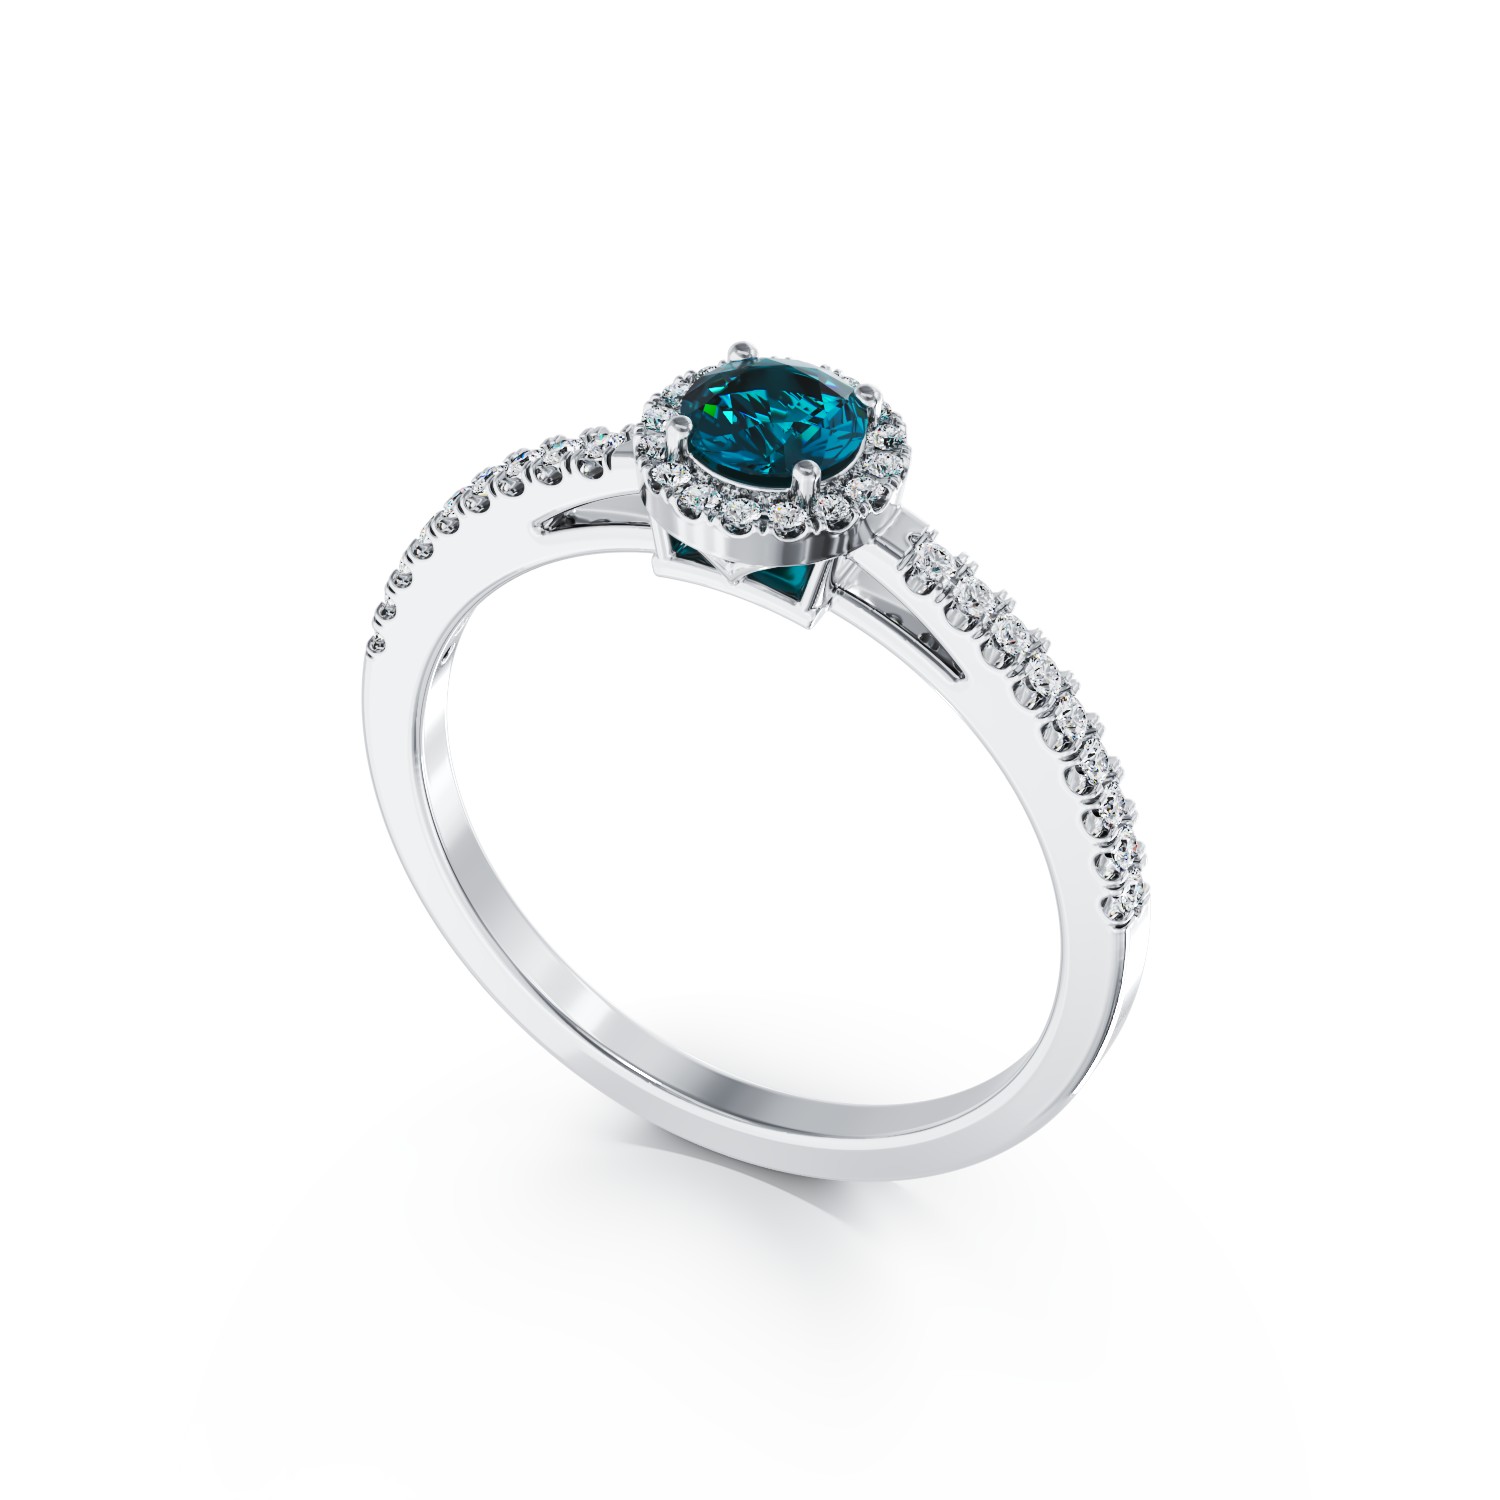 Inel de logodna din aur alb de 18K cu diamant albastru de 0.51ct si diamante transparente de 0.22ct